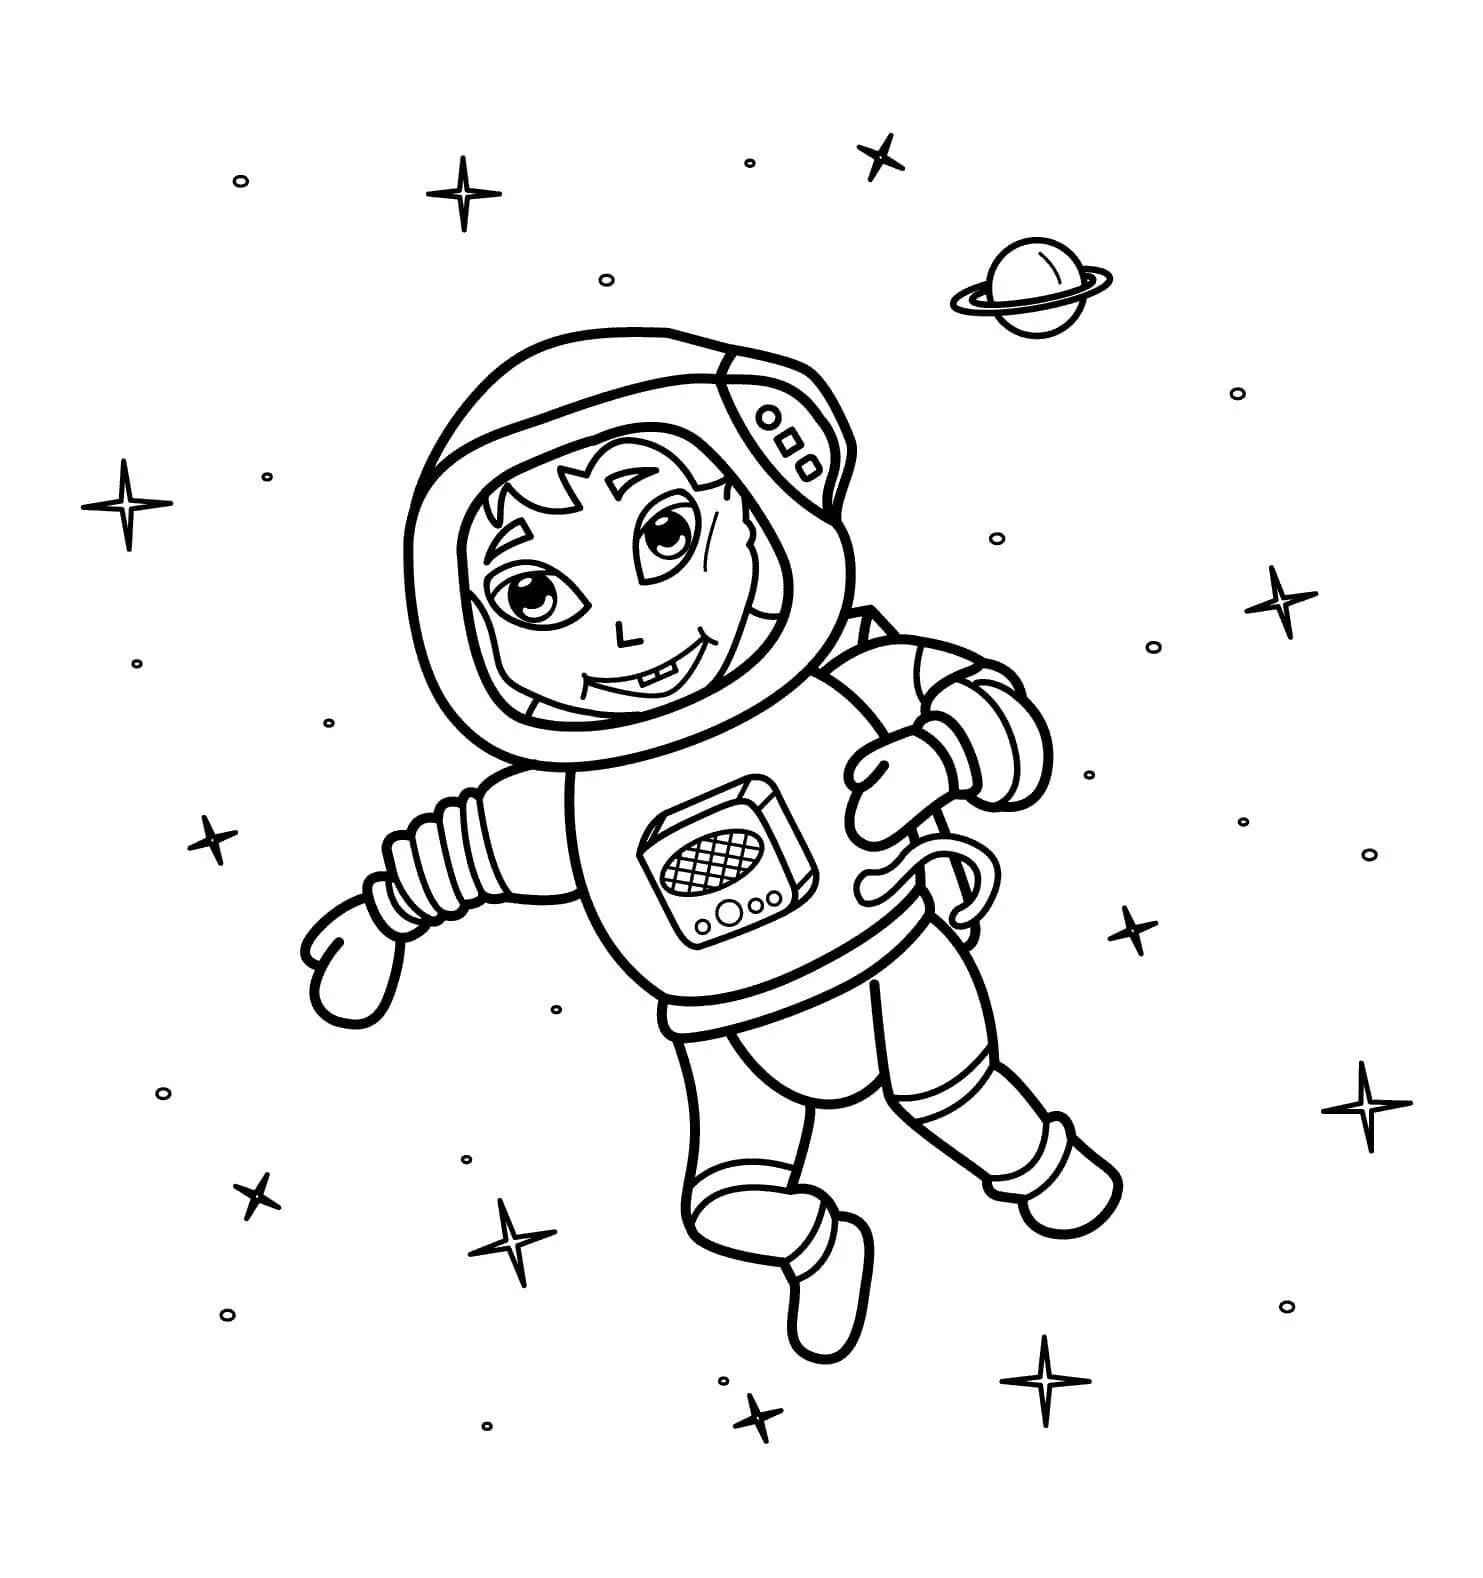 Раскраски к дню космонавтики для детей распечатать. Космонавт раскраска для детей. Космос раскраска для детей. Раскраска про космос и Космонавтов для детей. Космонавт для раскрашивания для детей.